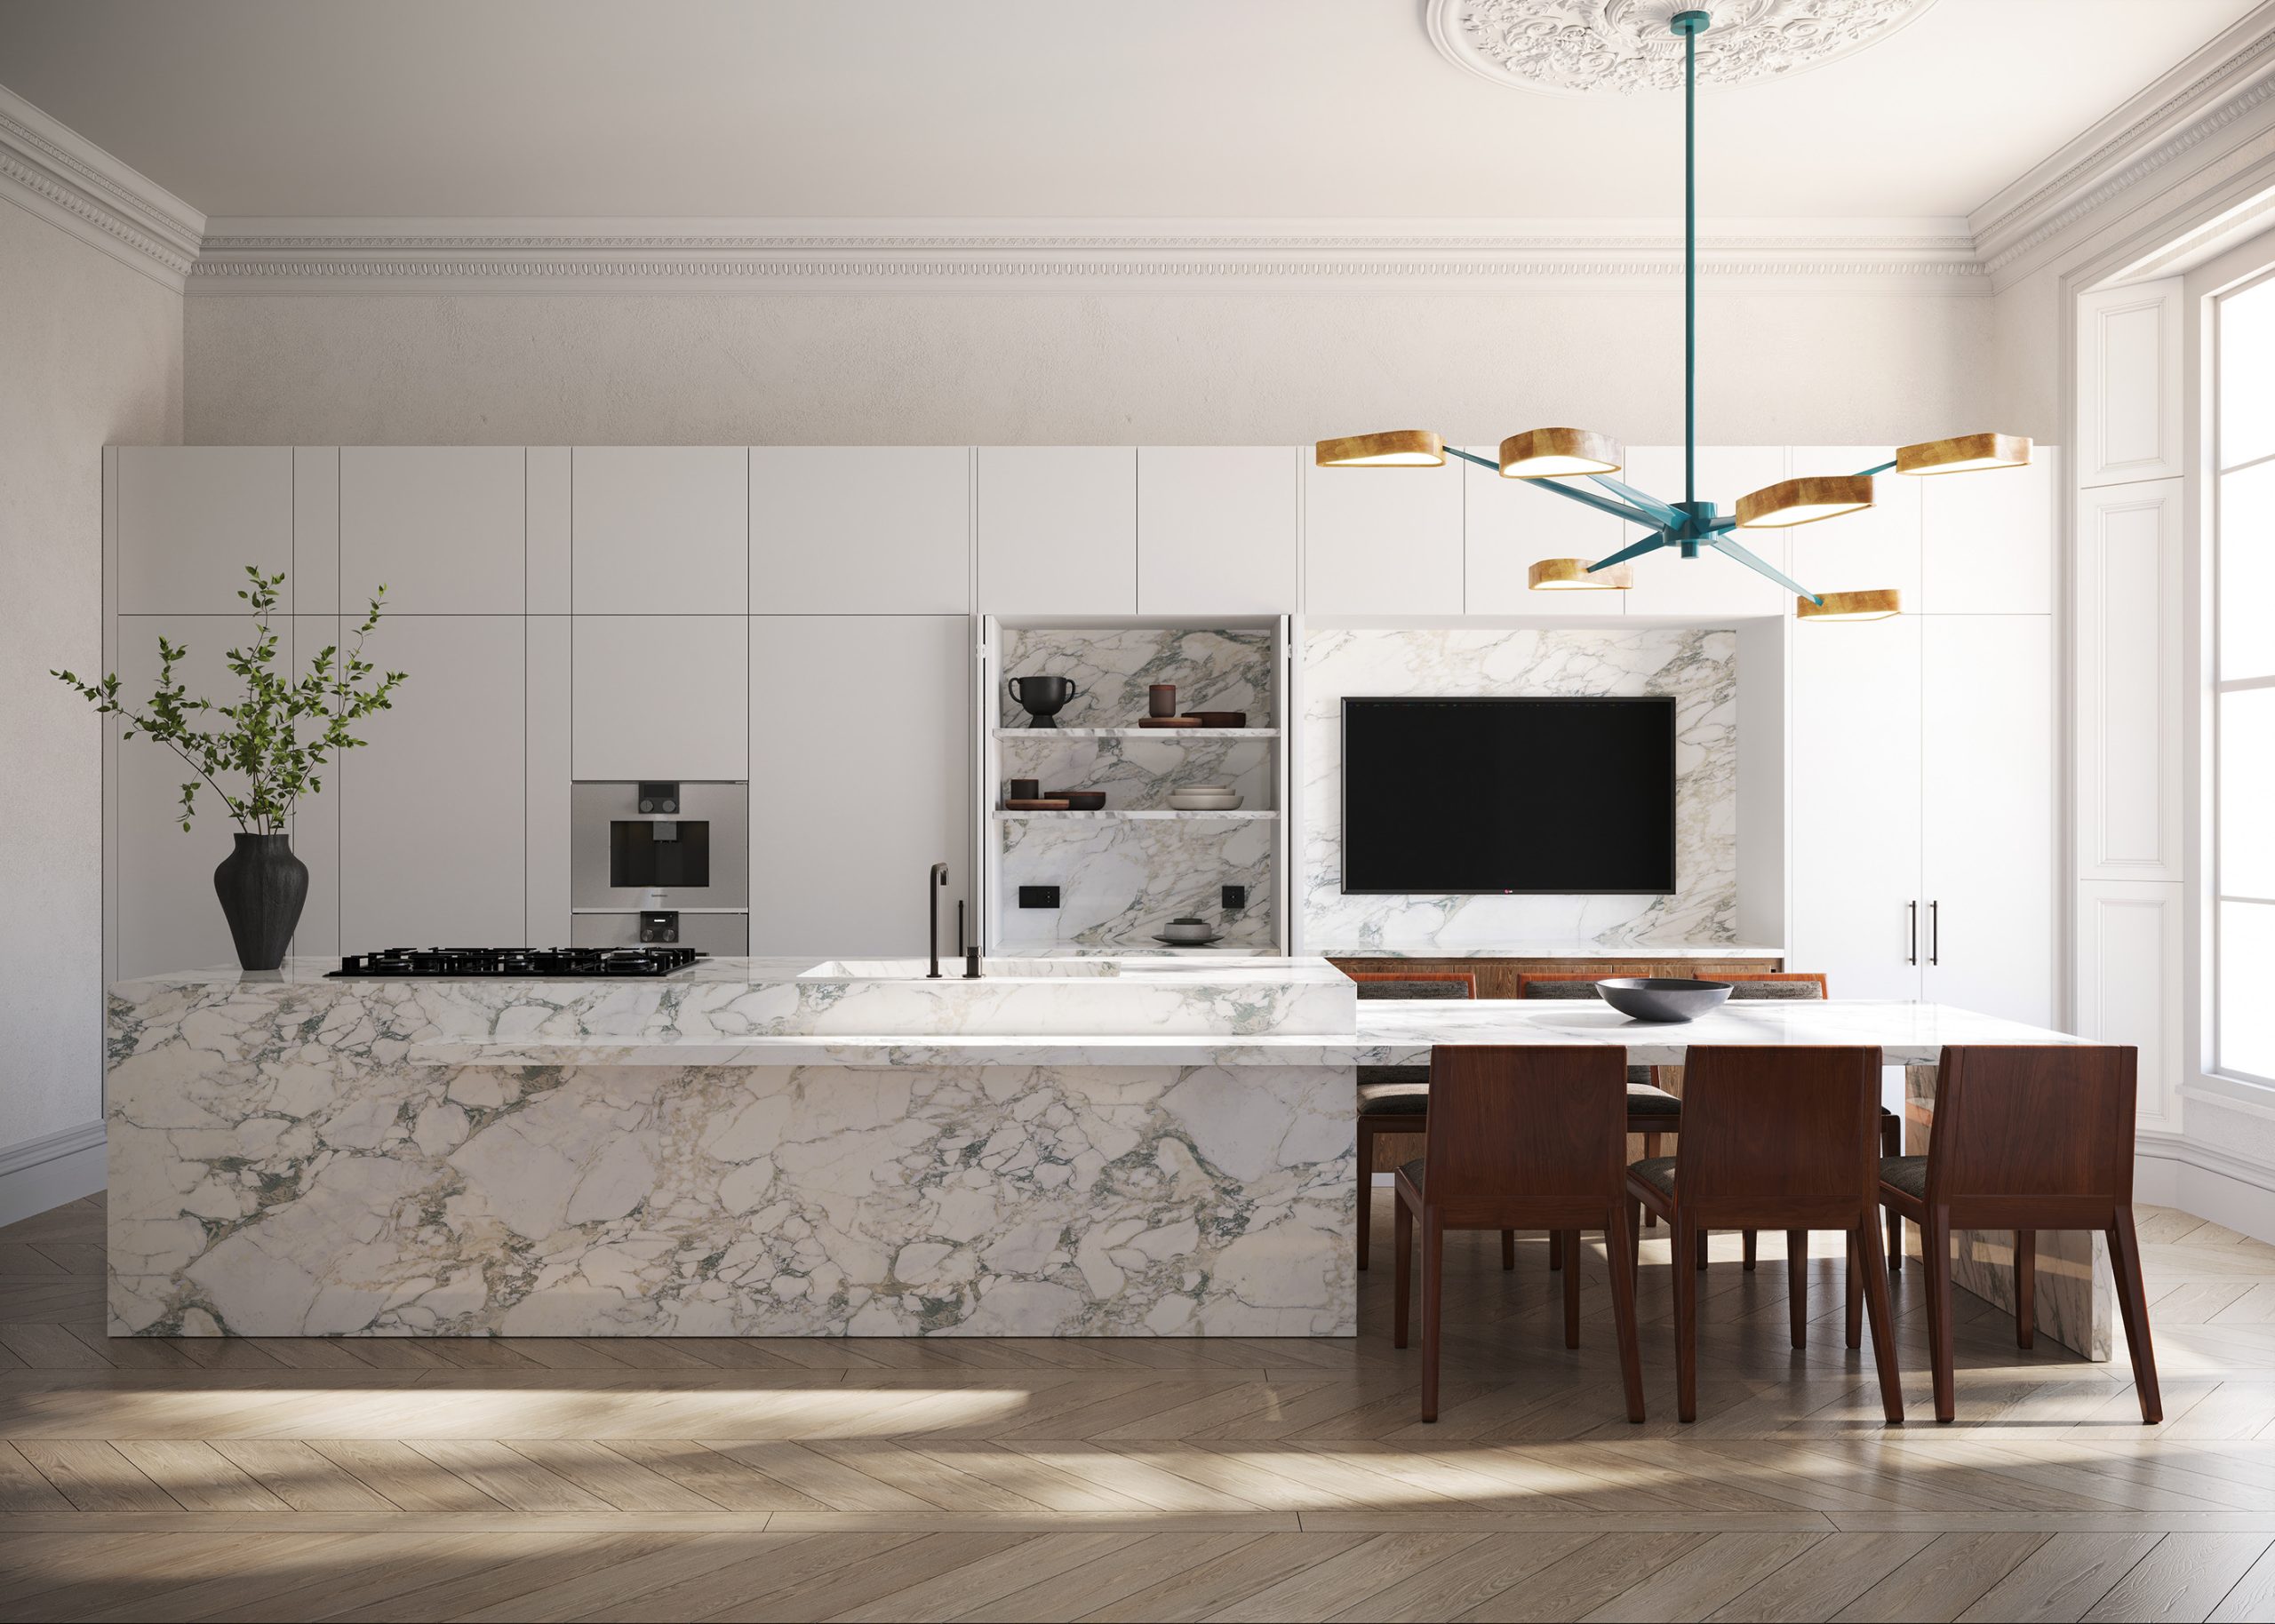 Deze luxe keuken is ontworpen door Nash Baker Architects, die op een stijlvolle manier een grote TV in het ontwerp heeft geïntegreerd. Er is een grote nis gecreëerd, tussen de keukenkasten, met marmeren achterwand, zodat het perfect past in het ontwerp.